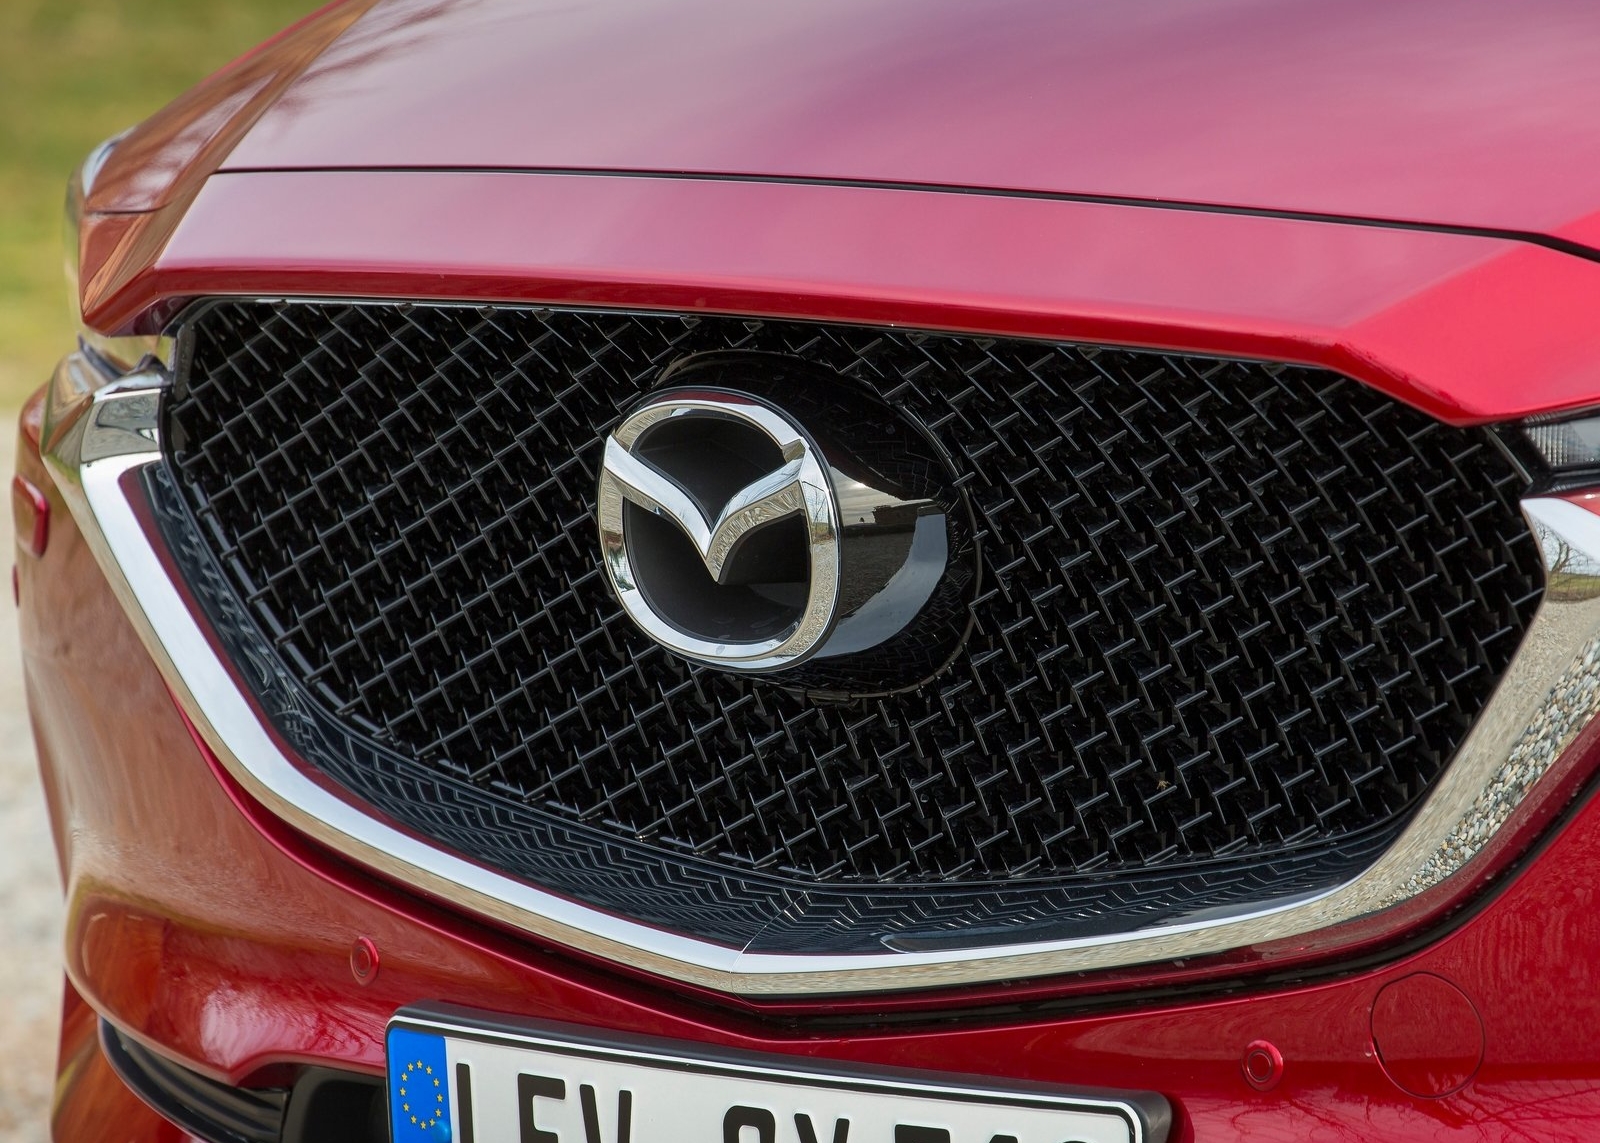 Boer Fantasie Belachelijk Hoe betrouwbaar is Mazda volgens de Consumentenbond? - Mazda Blog